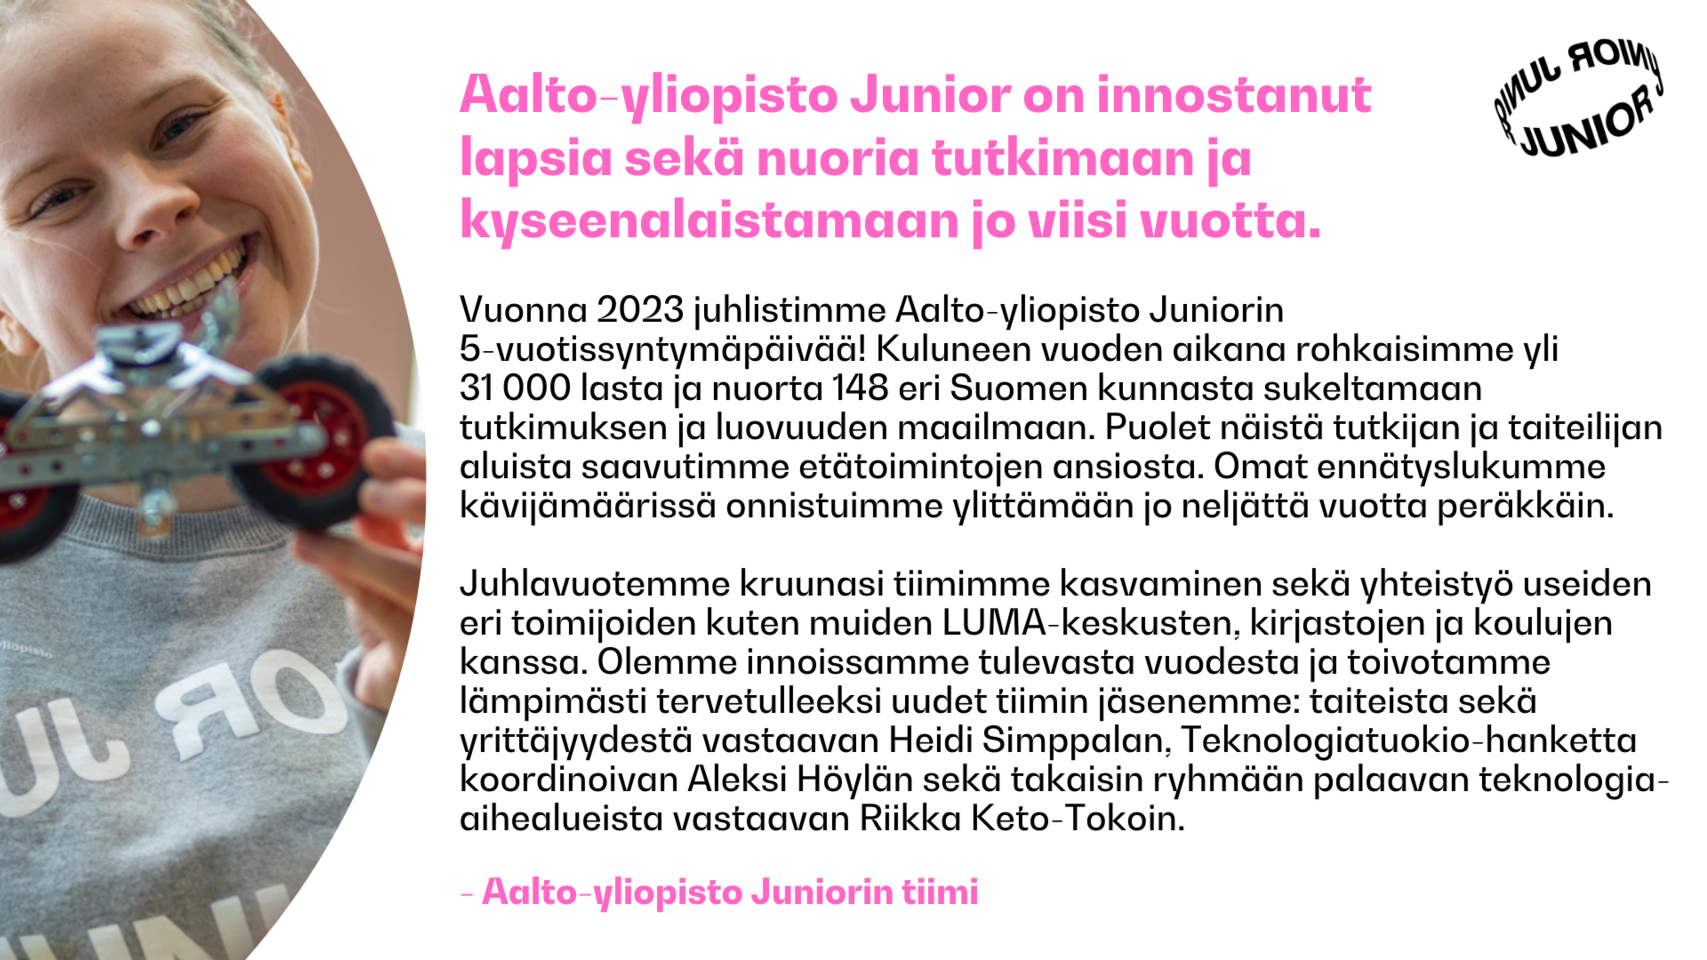 Aalto-yliopisto Juniorin tiimin terveiset